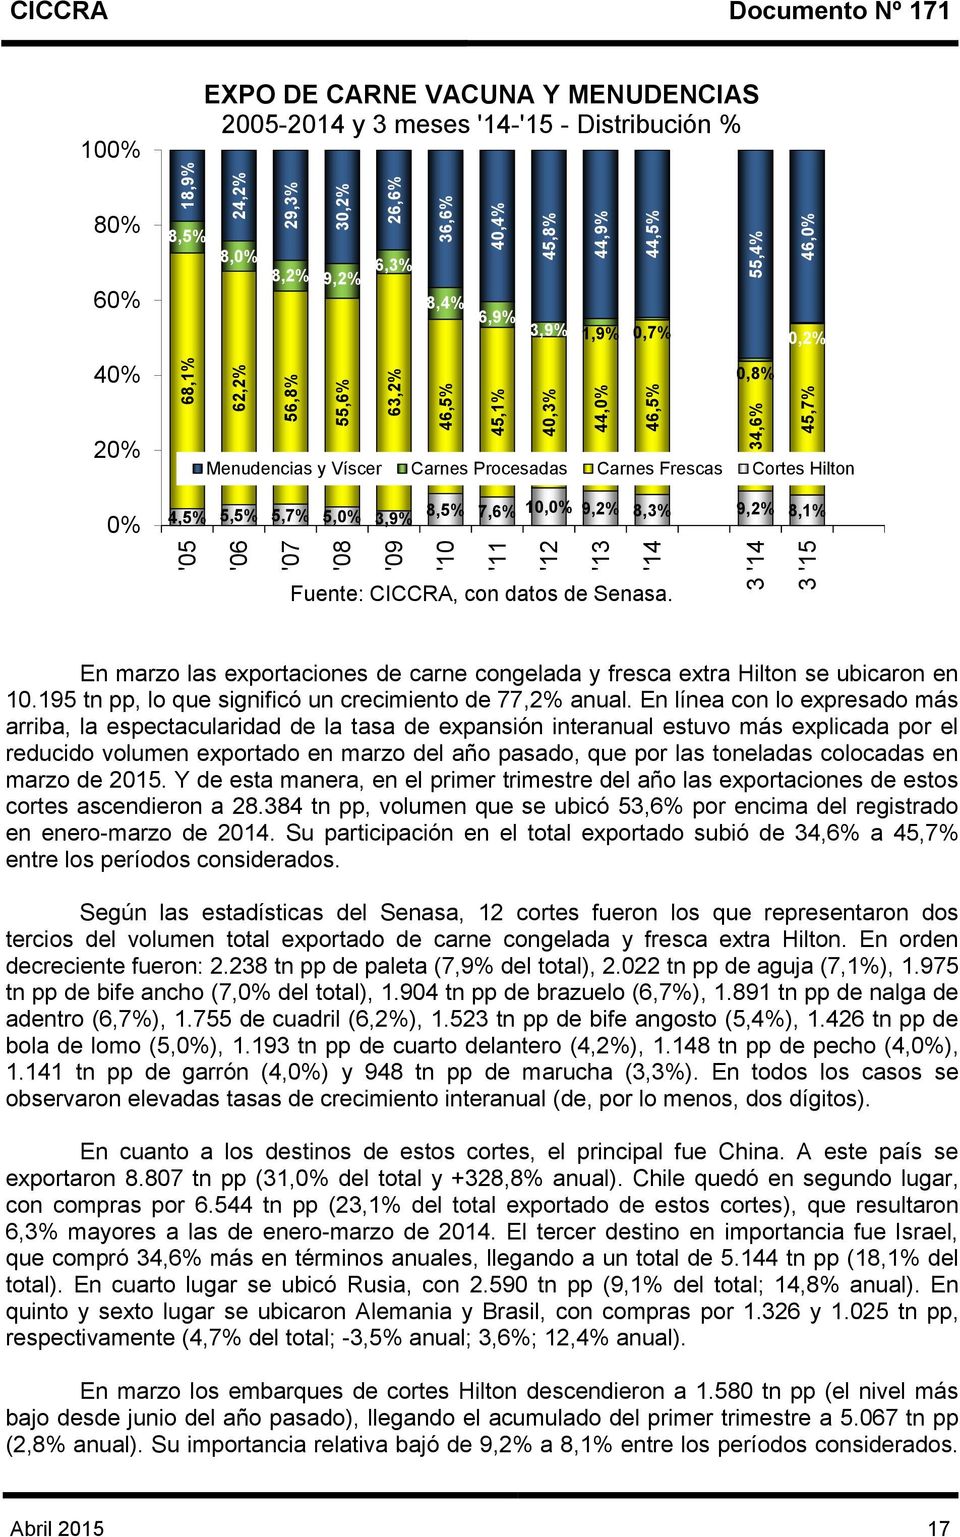 Víscer Carnes Procesadas Carnes Frescas Cortes Hilton 0% 4,5% 5,5% 5,7% 5,0% 3,9% 8,5% 7,6% 10,0% 9,2% 8,3% 9,2% 8,1% Fuente: CICCRA, con datos de Senasa.